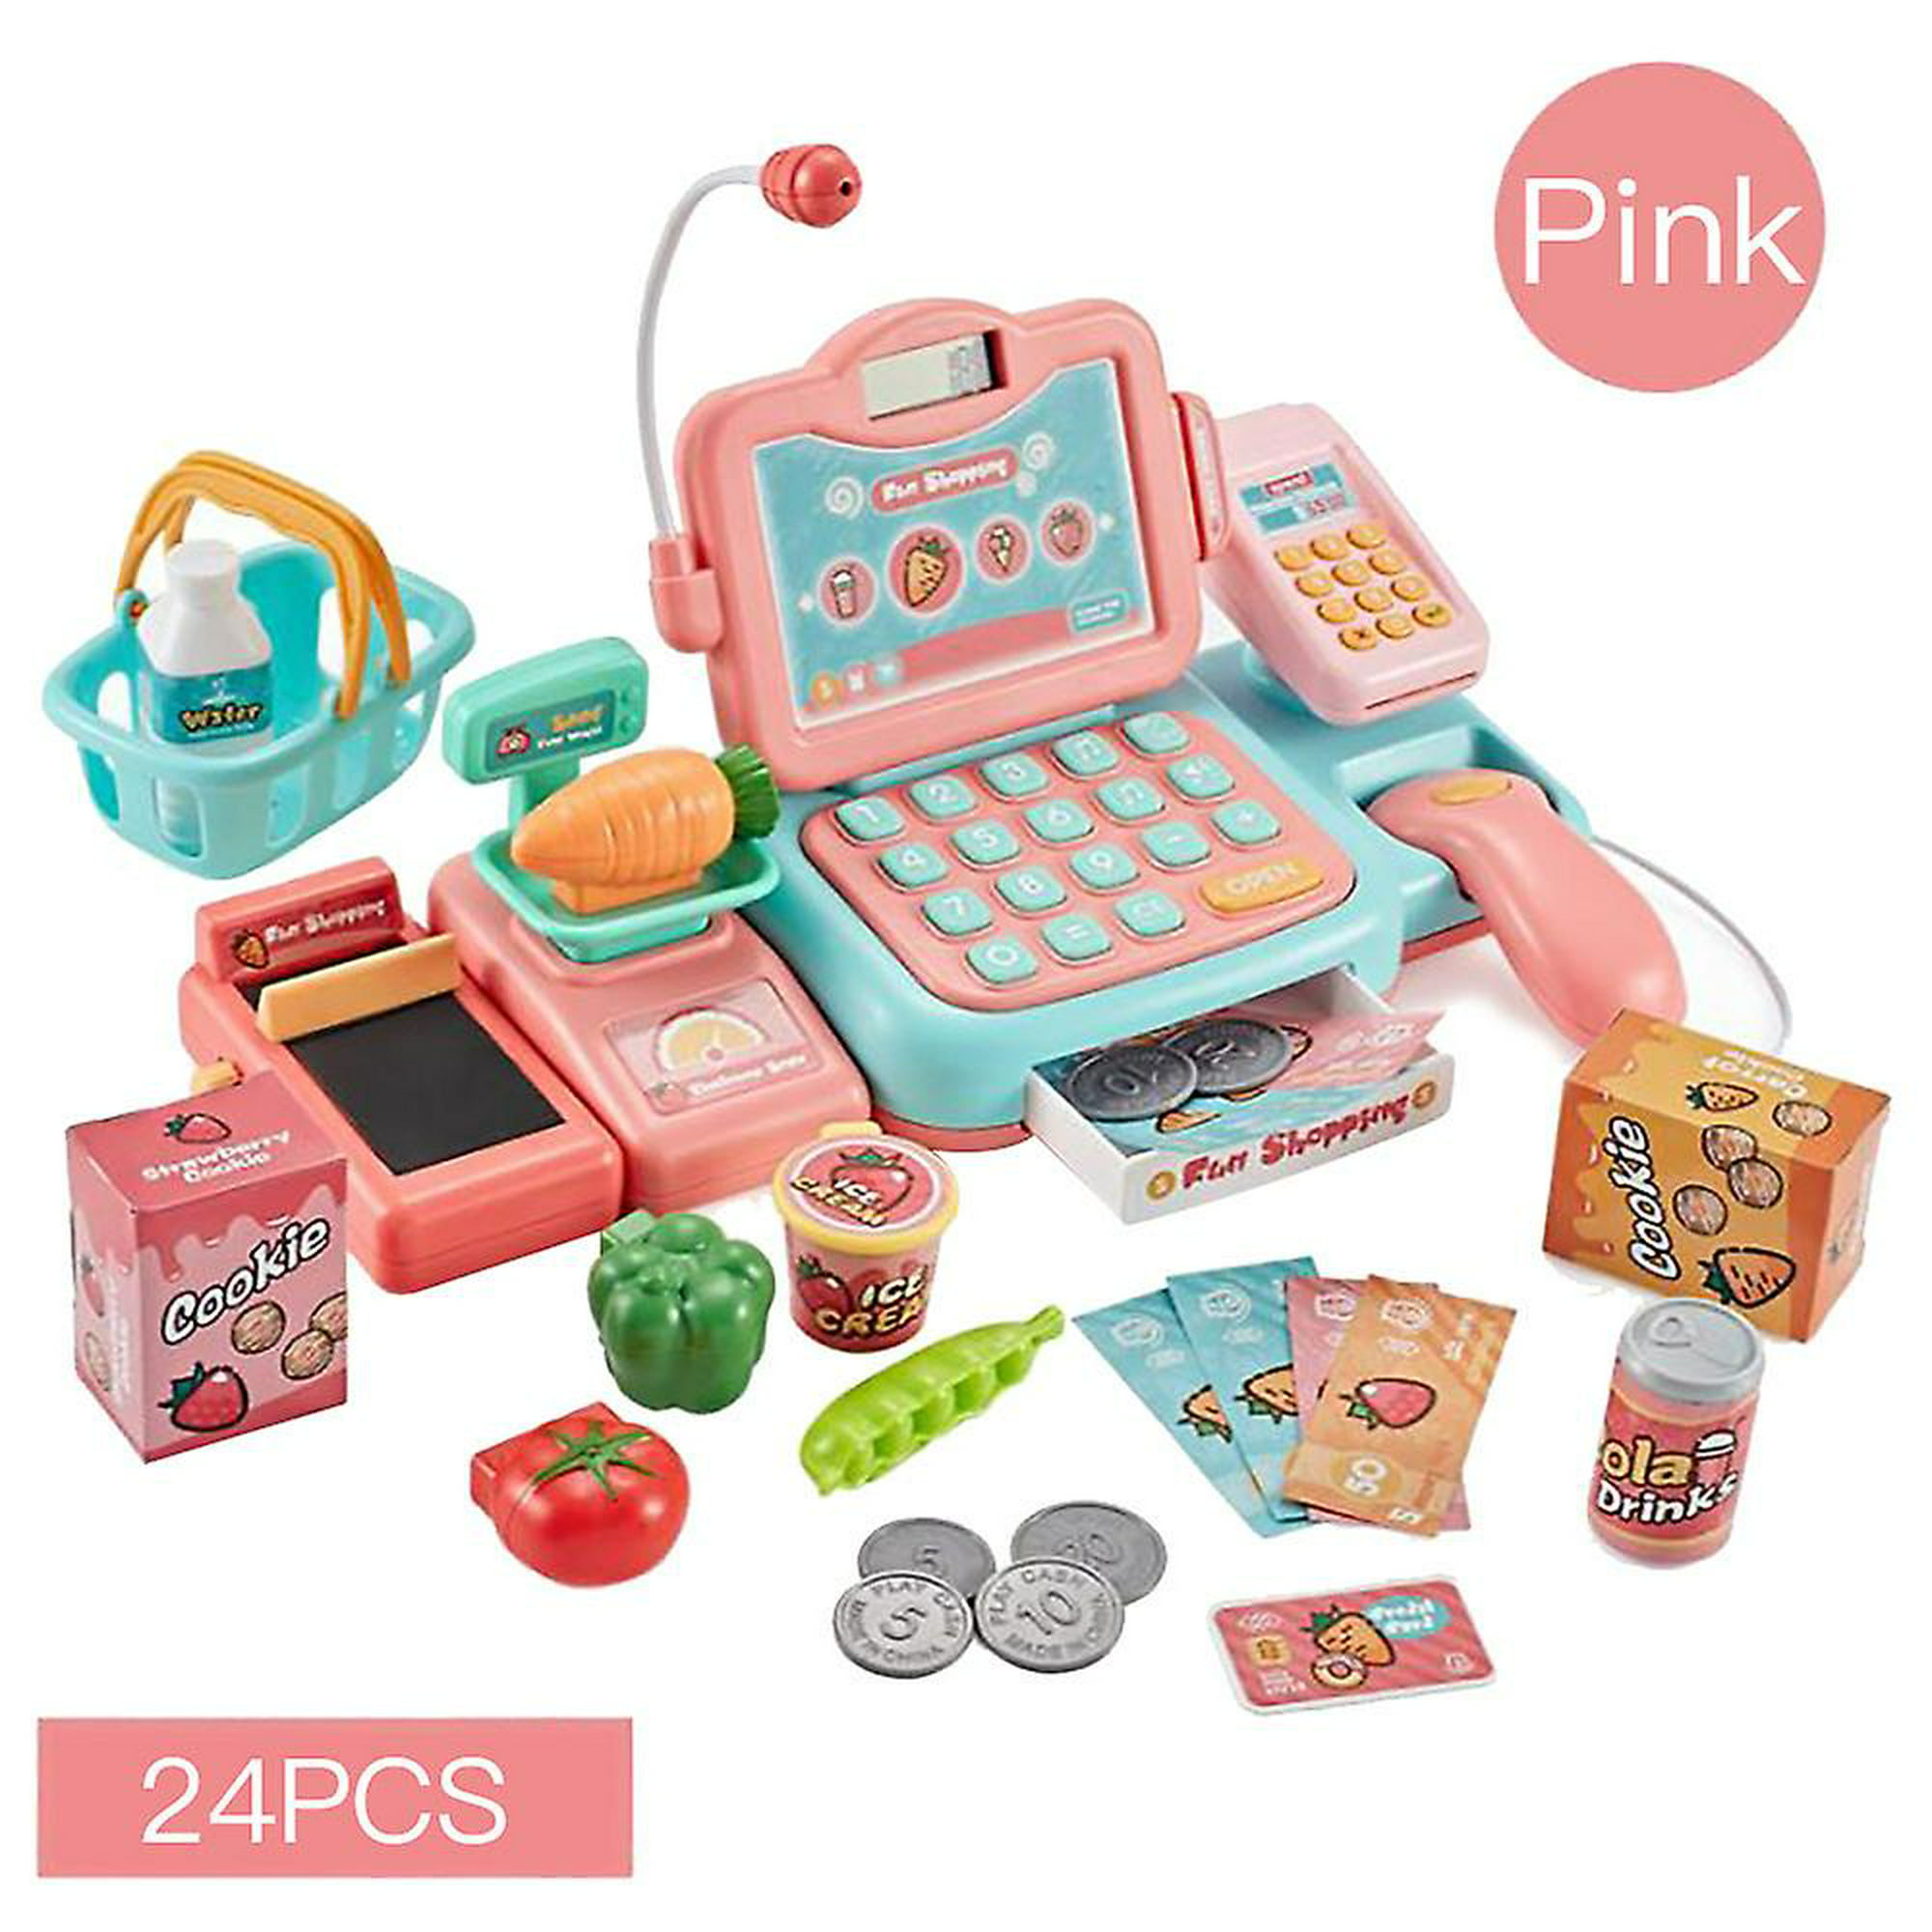  Mundo Toys Caja registradora para niños, juego de calculadora  de juego de simulación con 25 accesorios, incluye escáner realista, sonido,  micrófono, crédito de simulación, rosa : Juguetes y Juegos